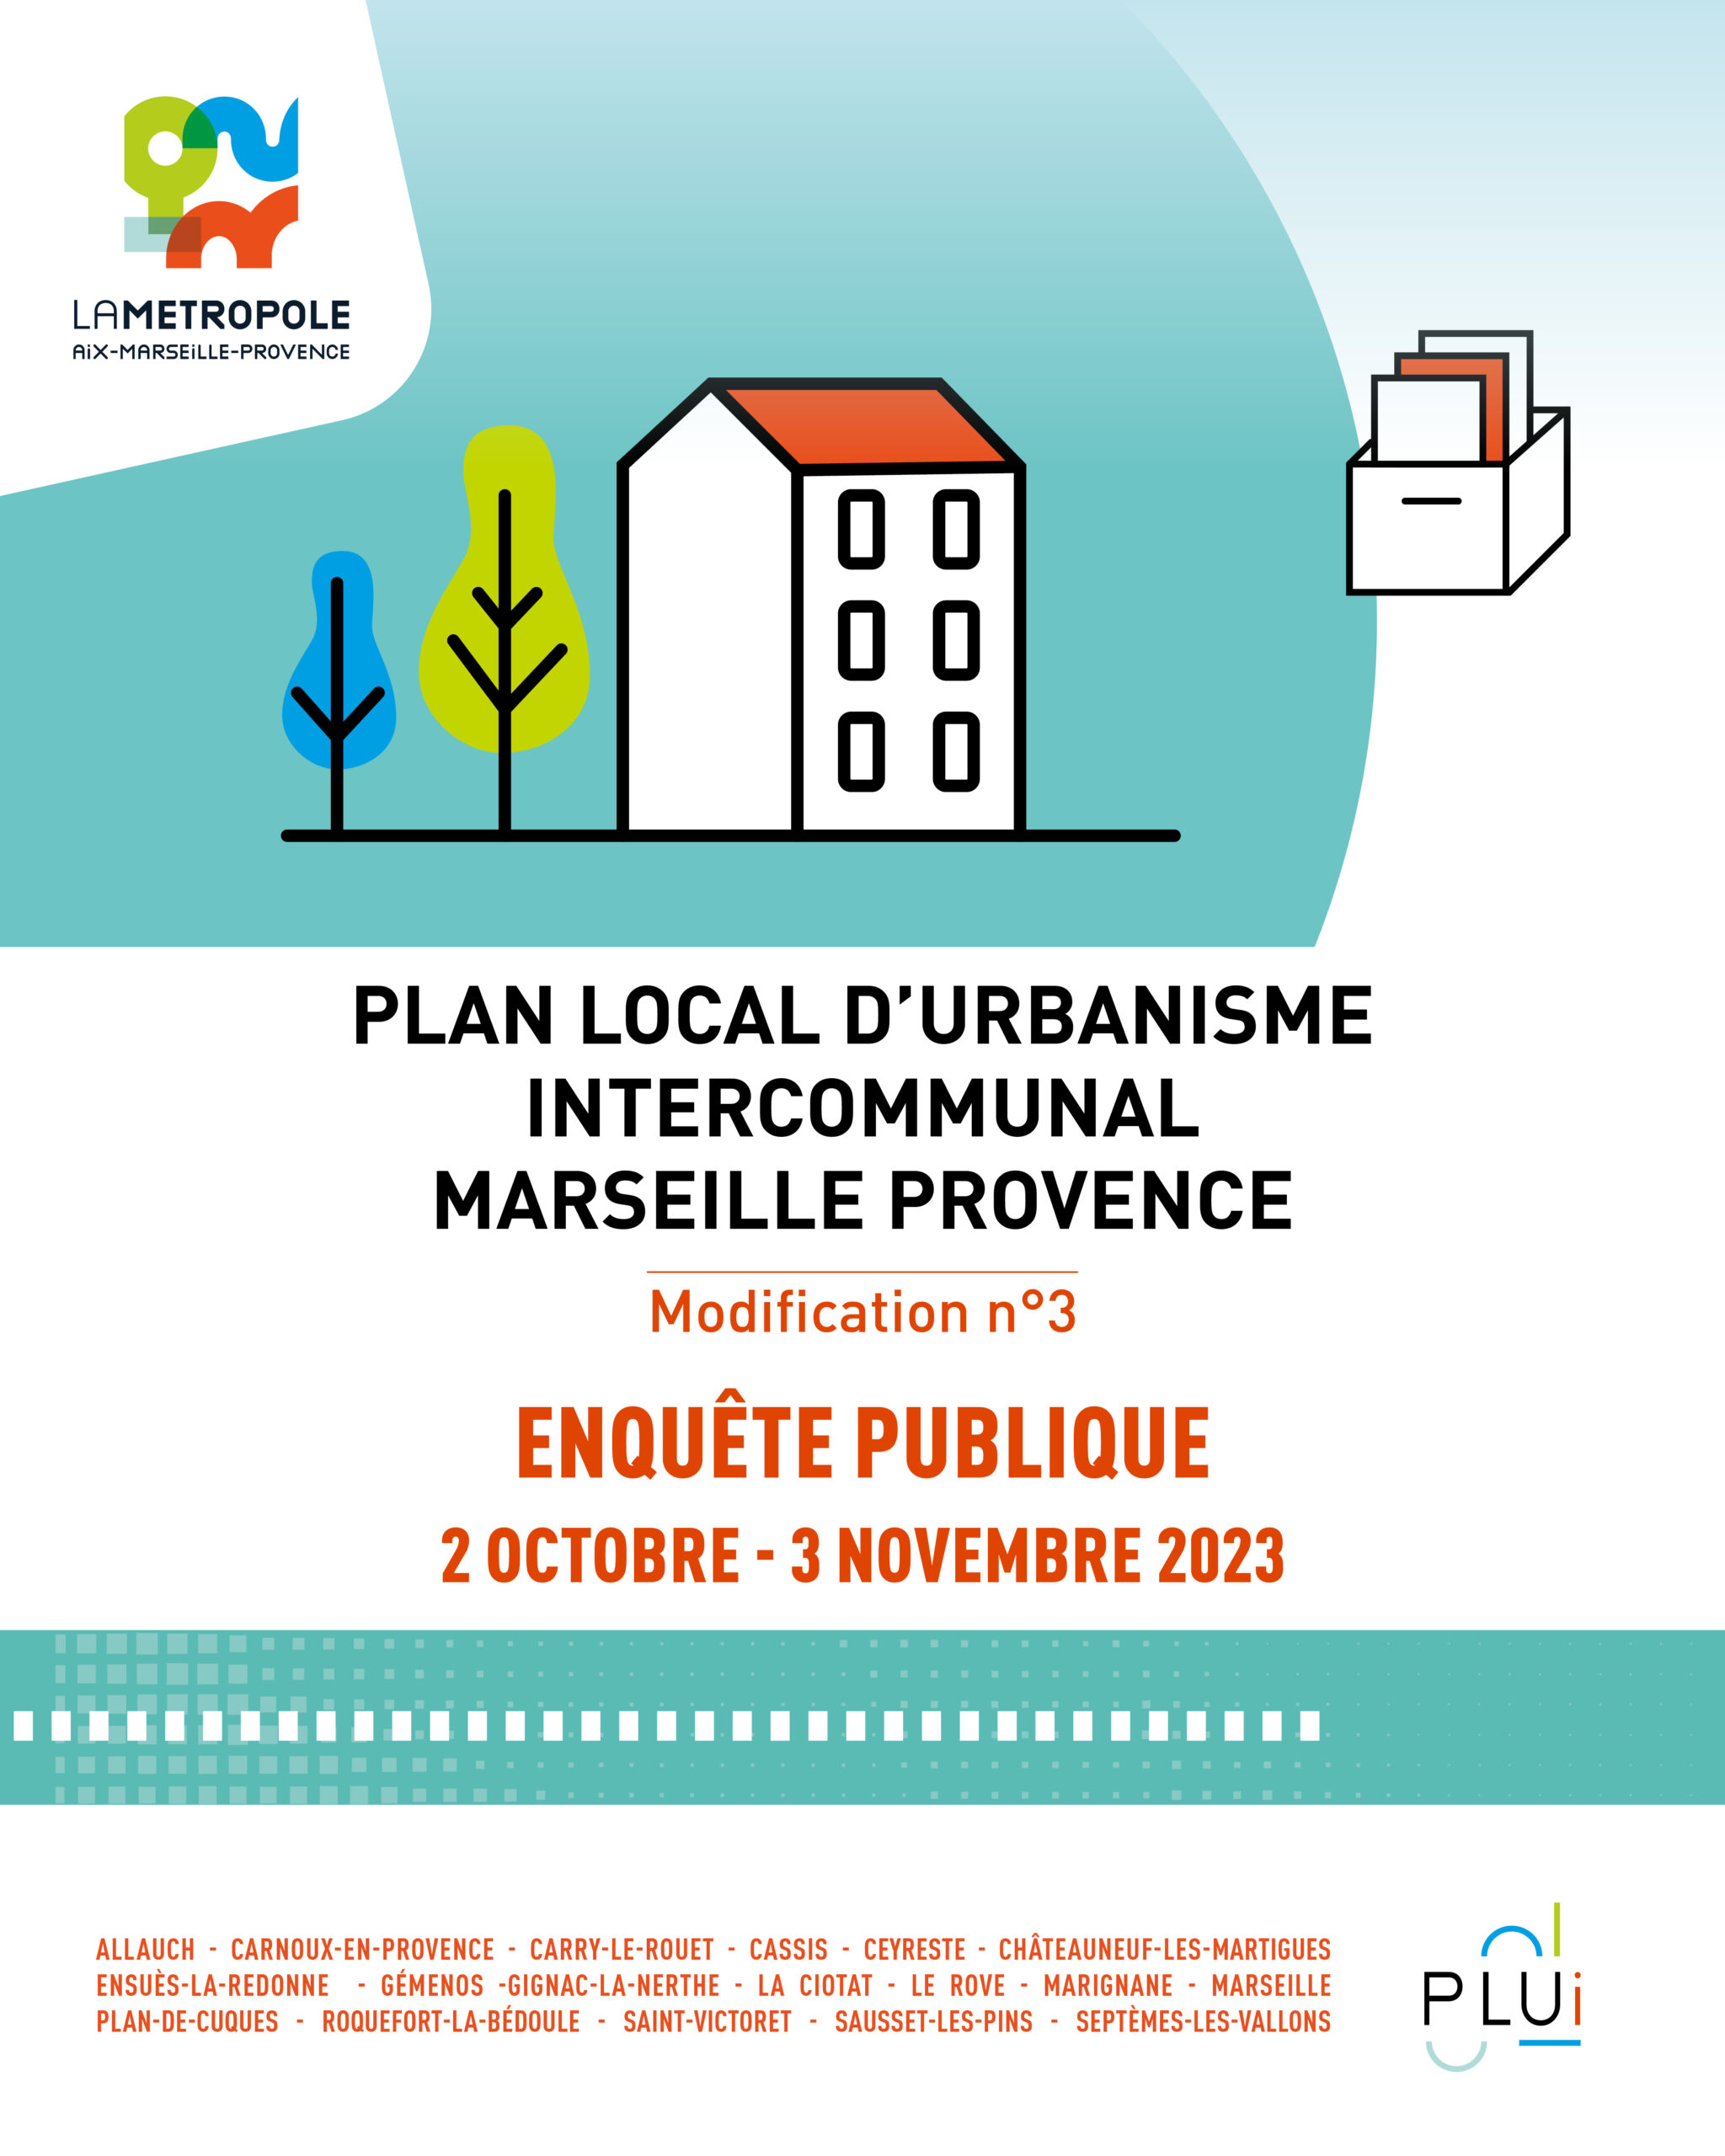 Enquête publique sur la modification n°3 du PLUi Marseille Provence